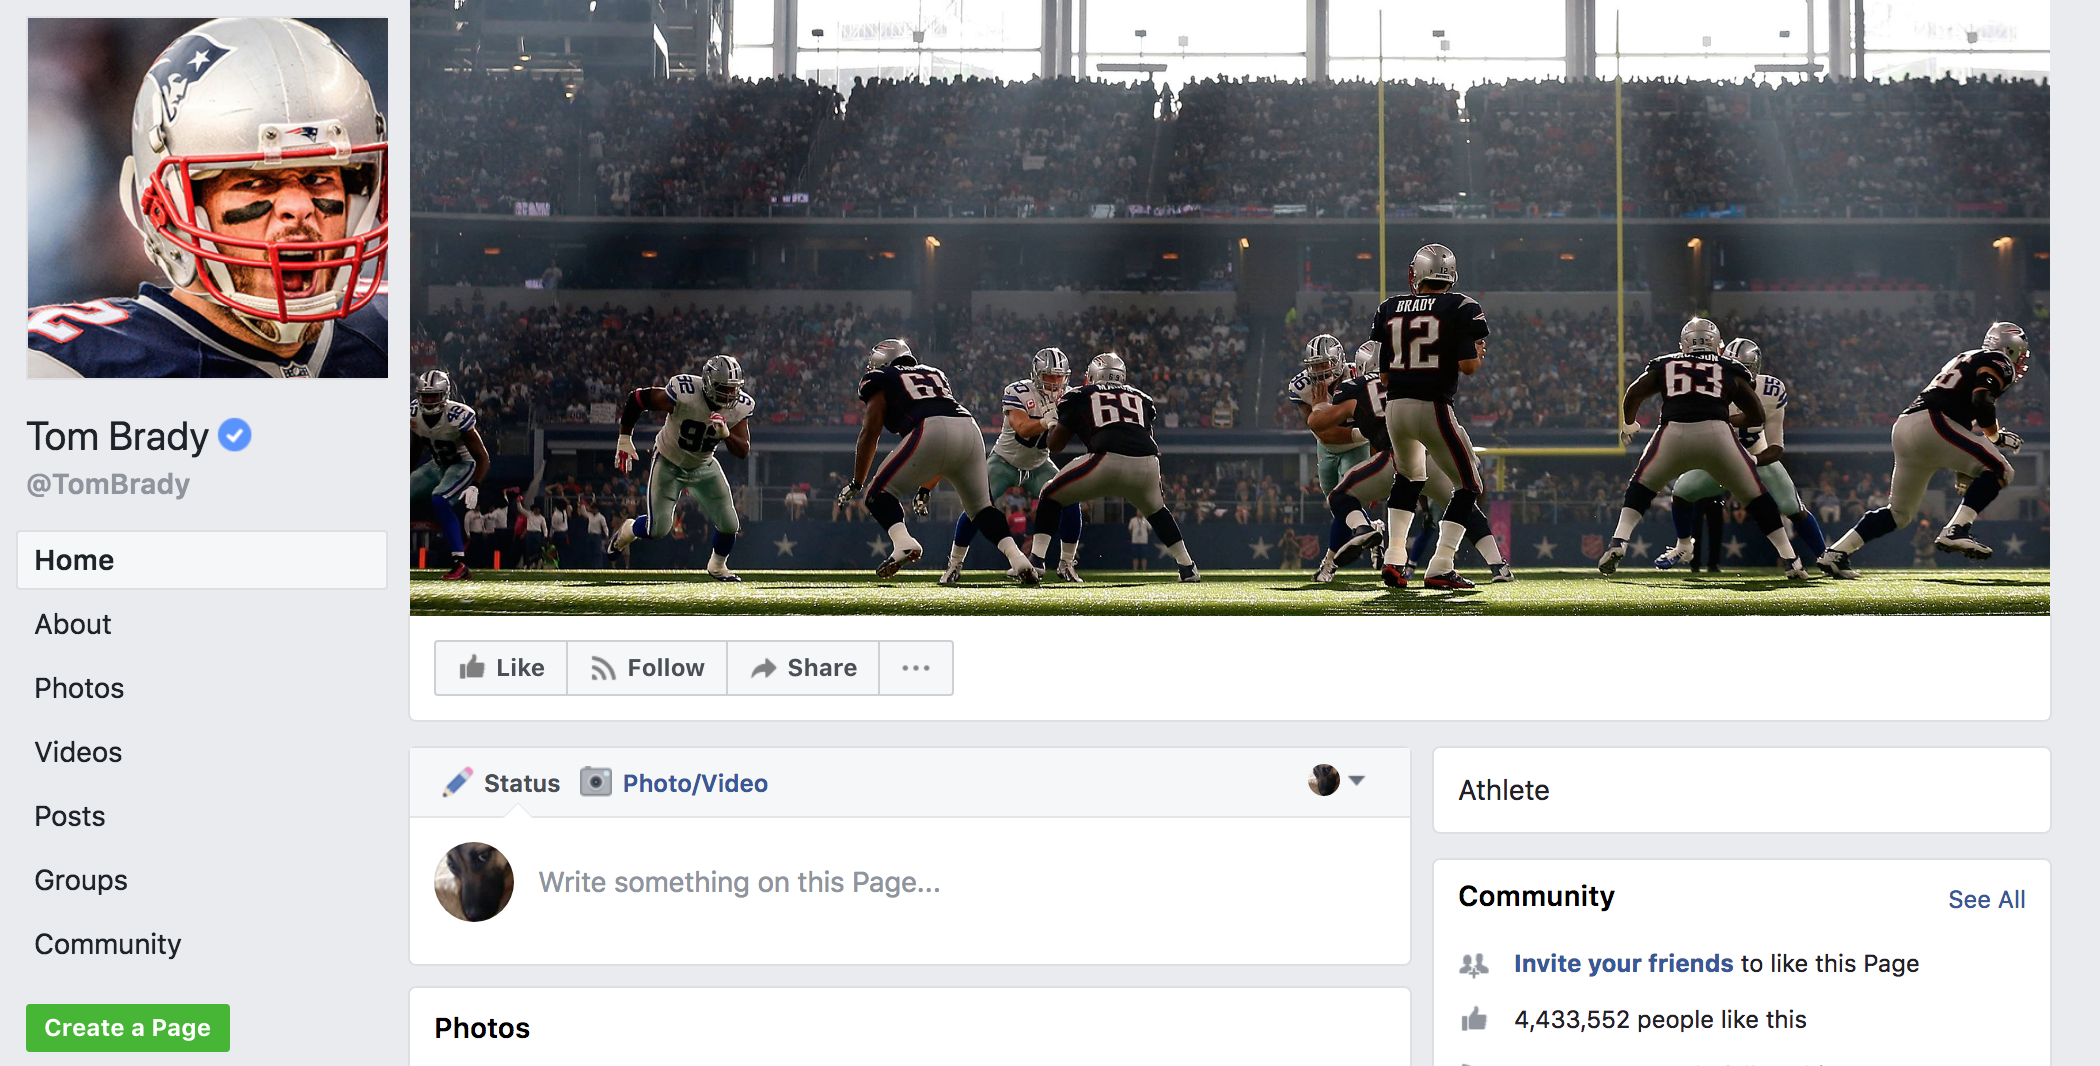 Tom Brady Facebook Page